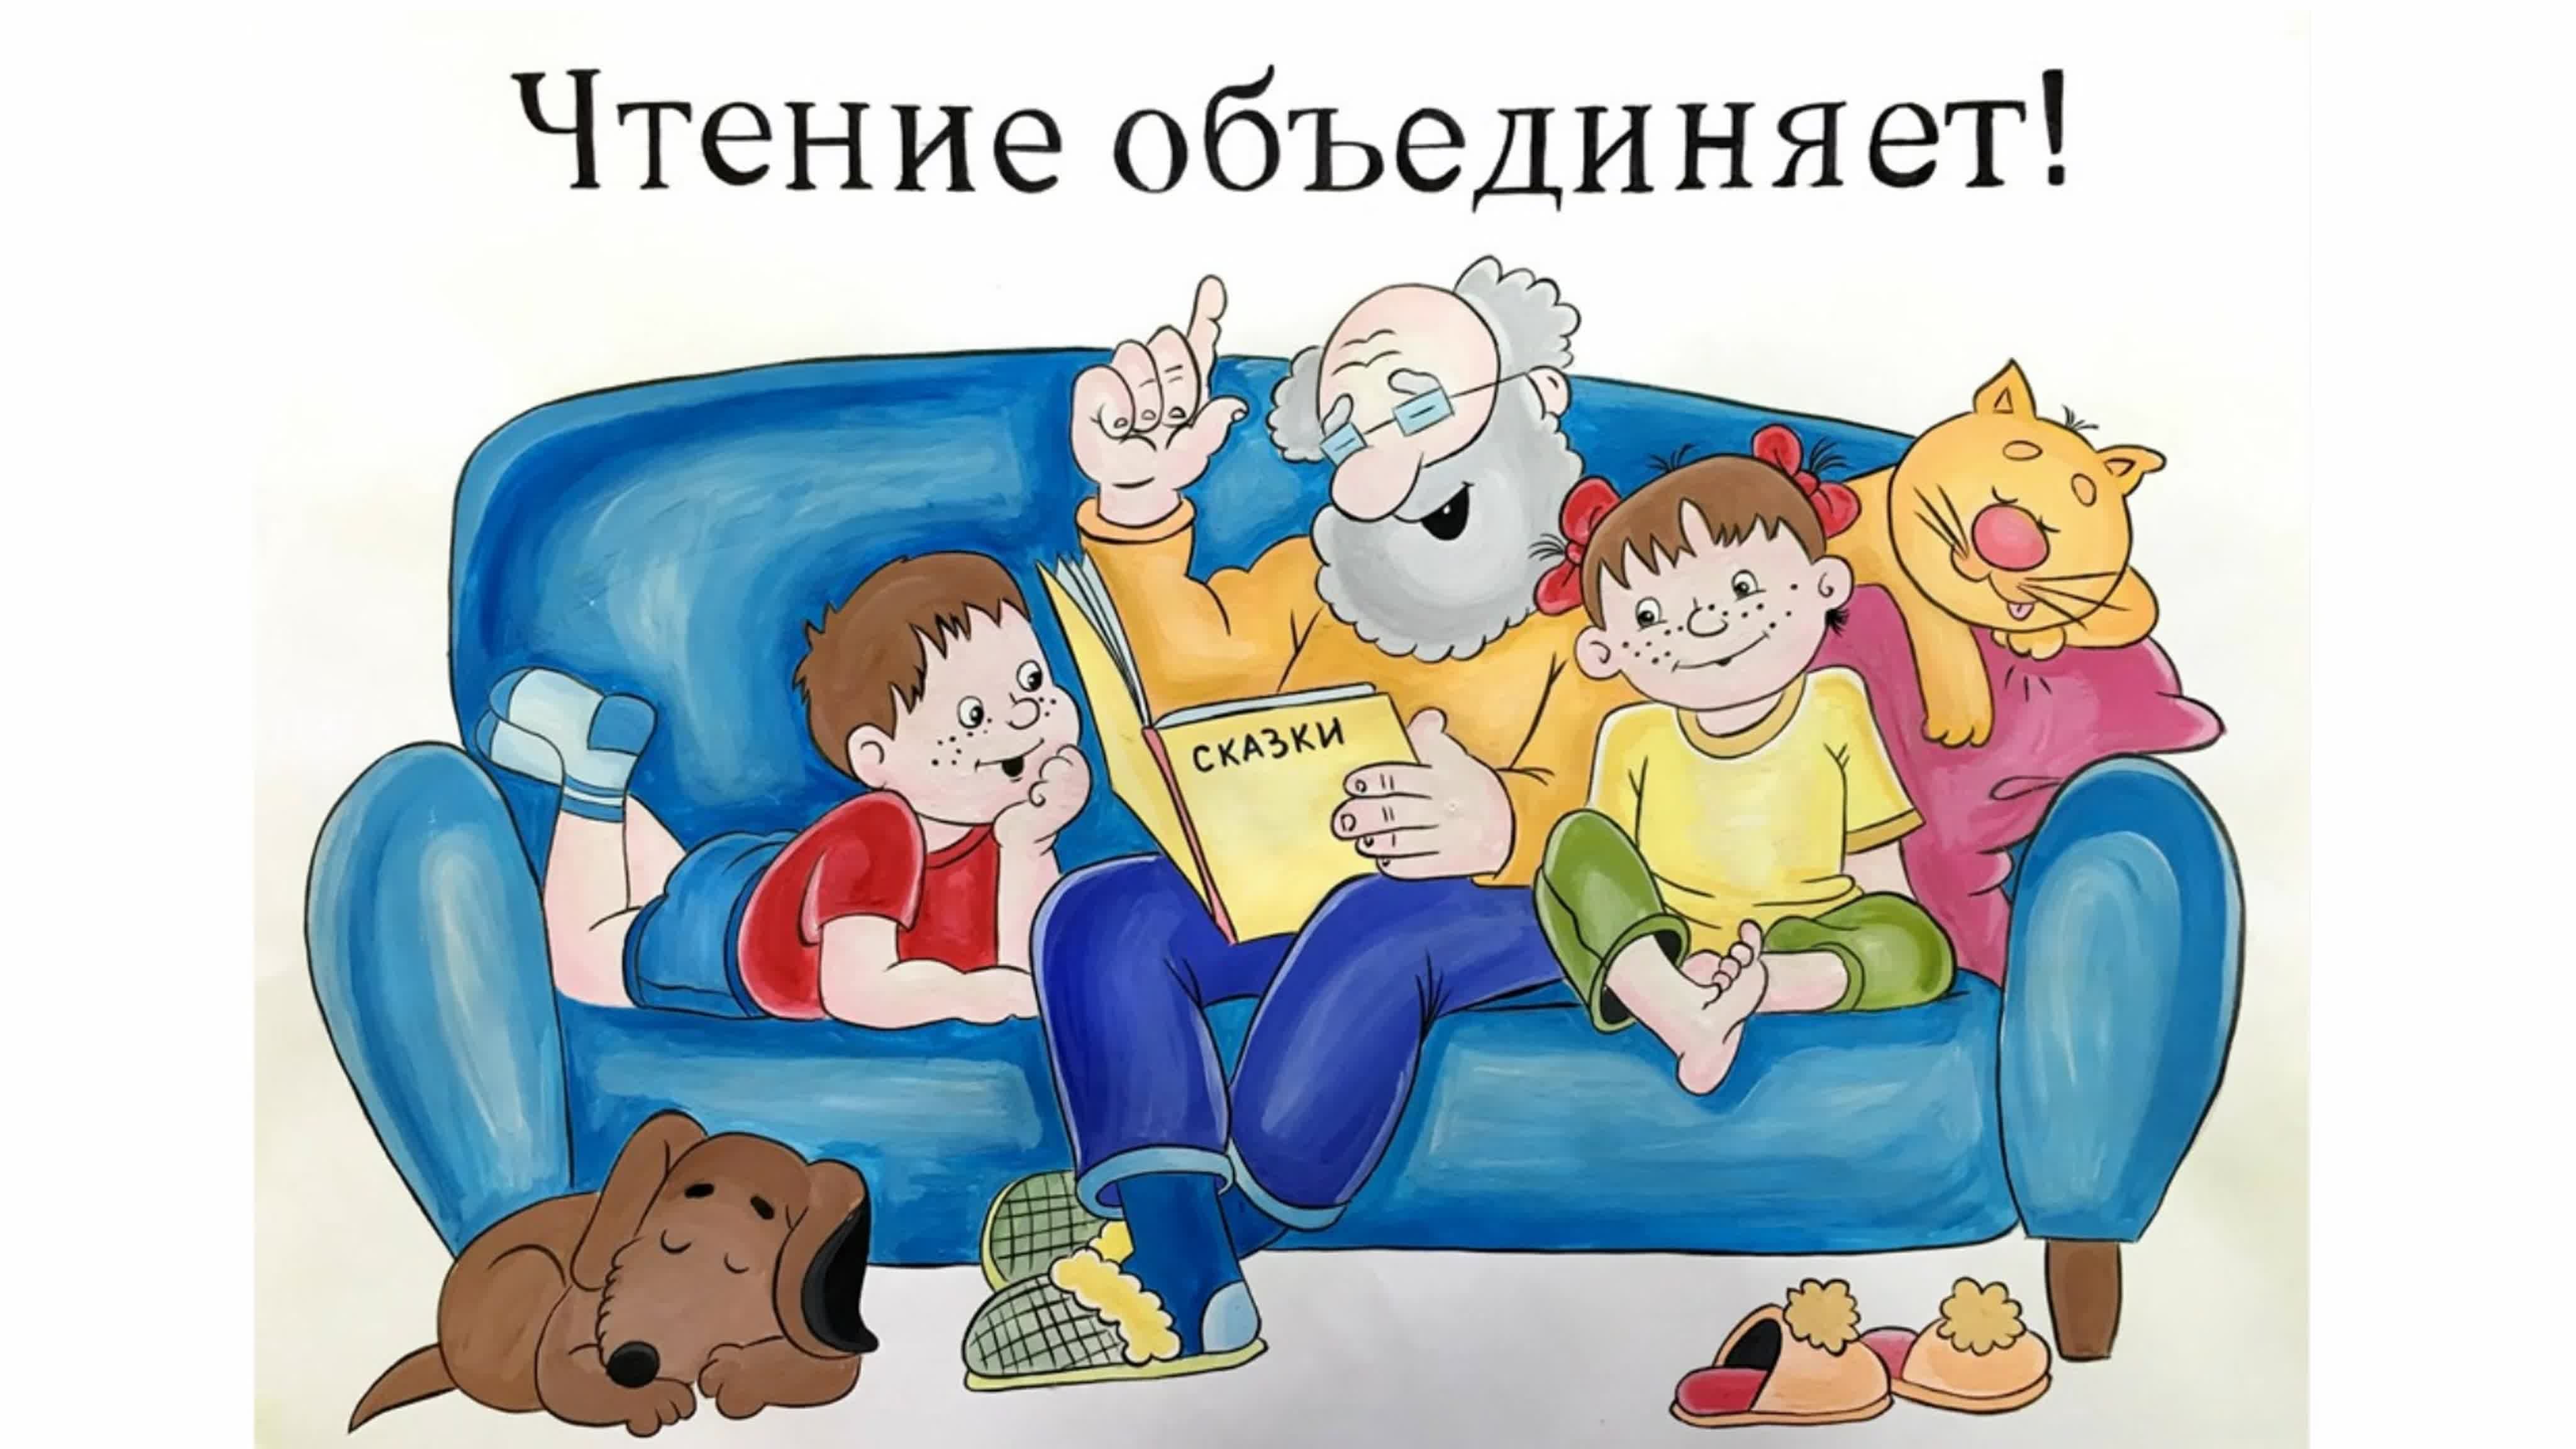 Вместе книга и семья. Семейное чтение. Читаем книги всей семьей. Традиции семейного чтения. Детские книги для семейного чтения.